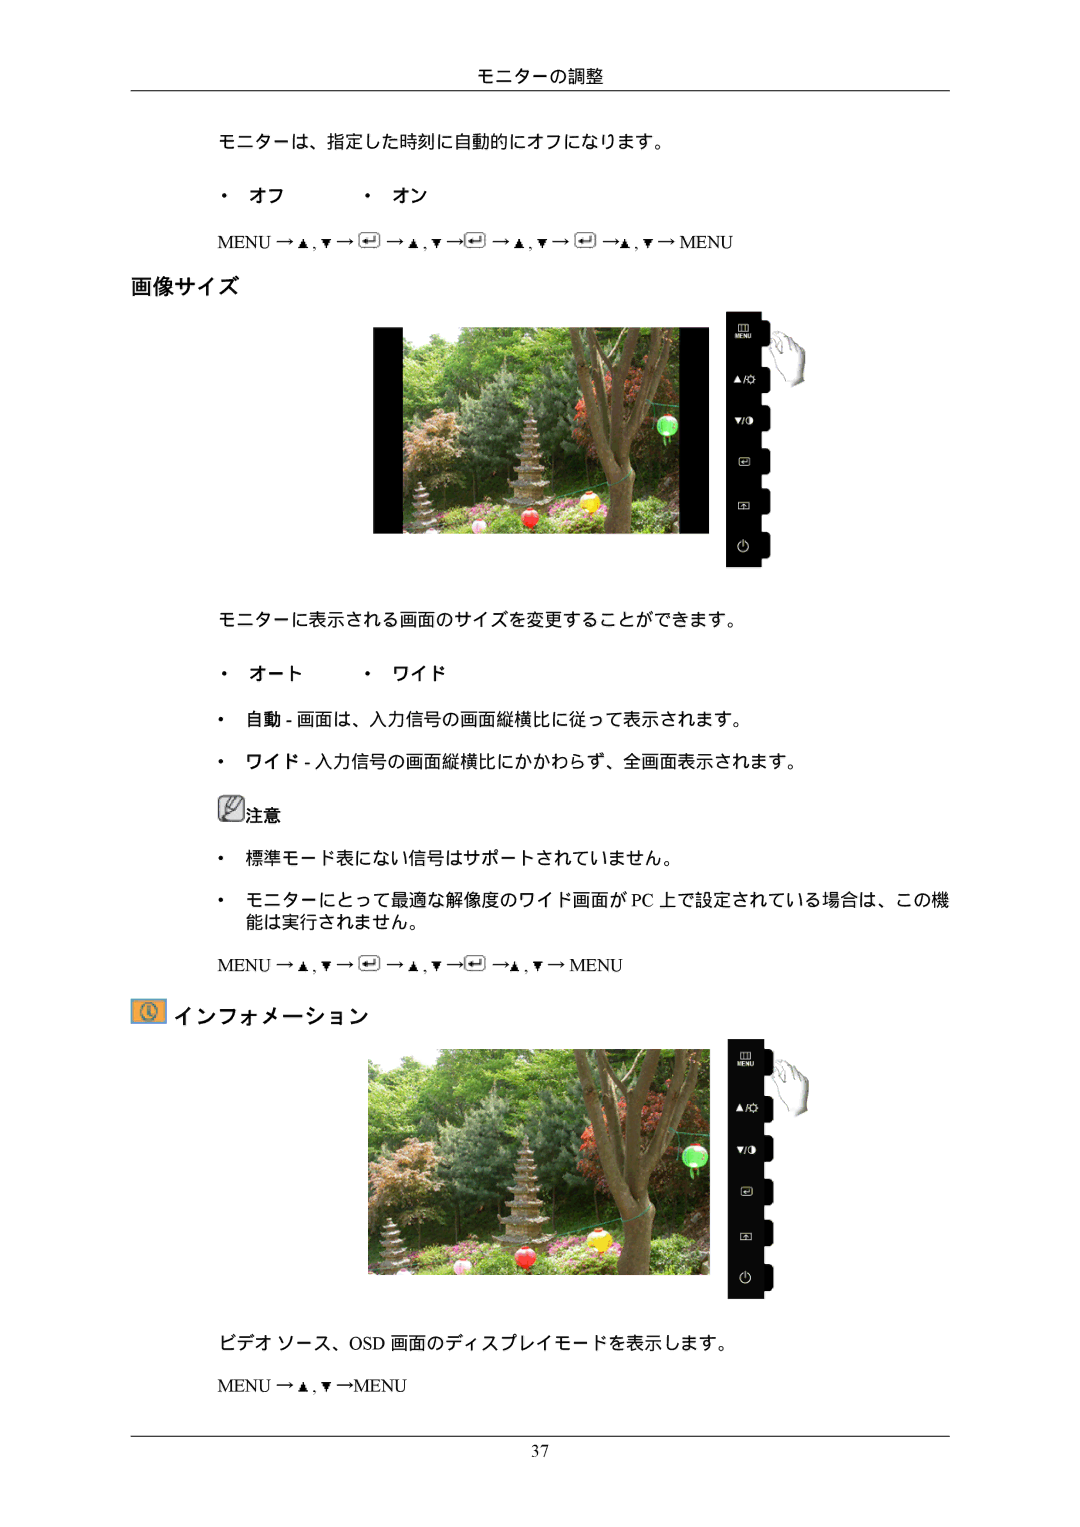 Samsung LS22CMFKFV/XJ, LS22CMEKFV/XJ manual 画像サイズ, インフォメーション, Menu → , → → , → → , → → , → Menu, Menu → , →MENU 